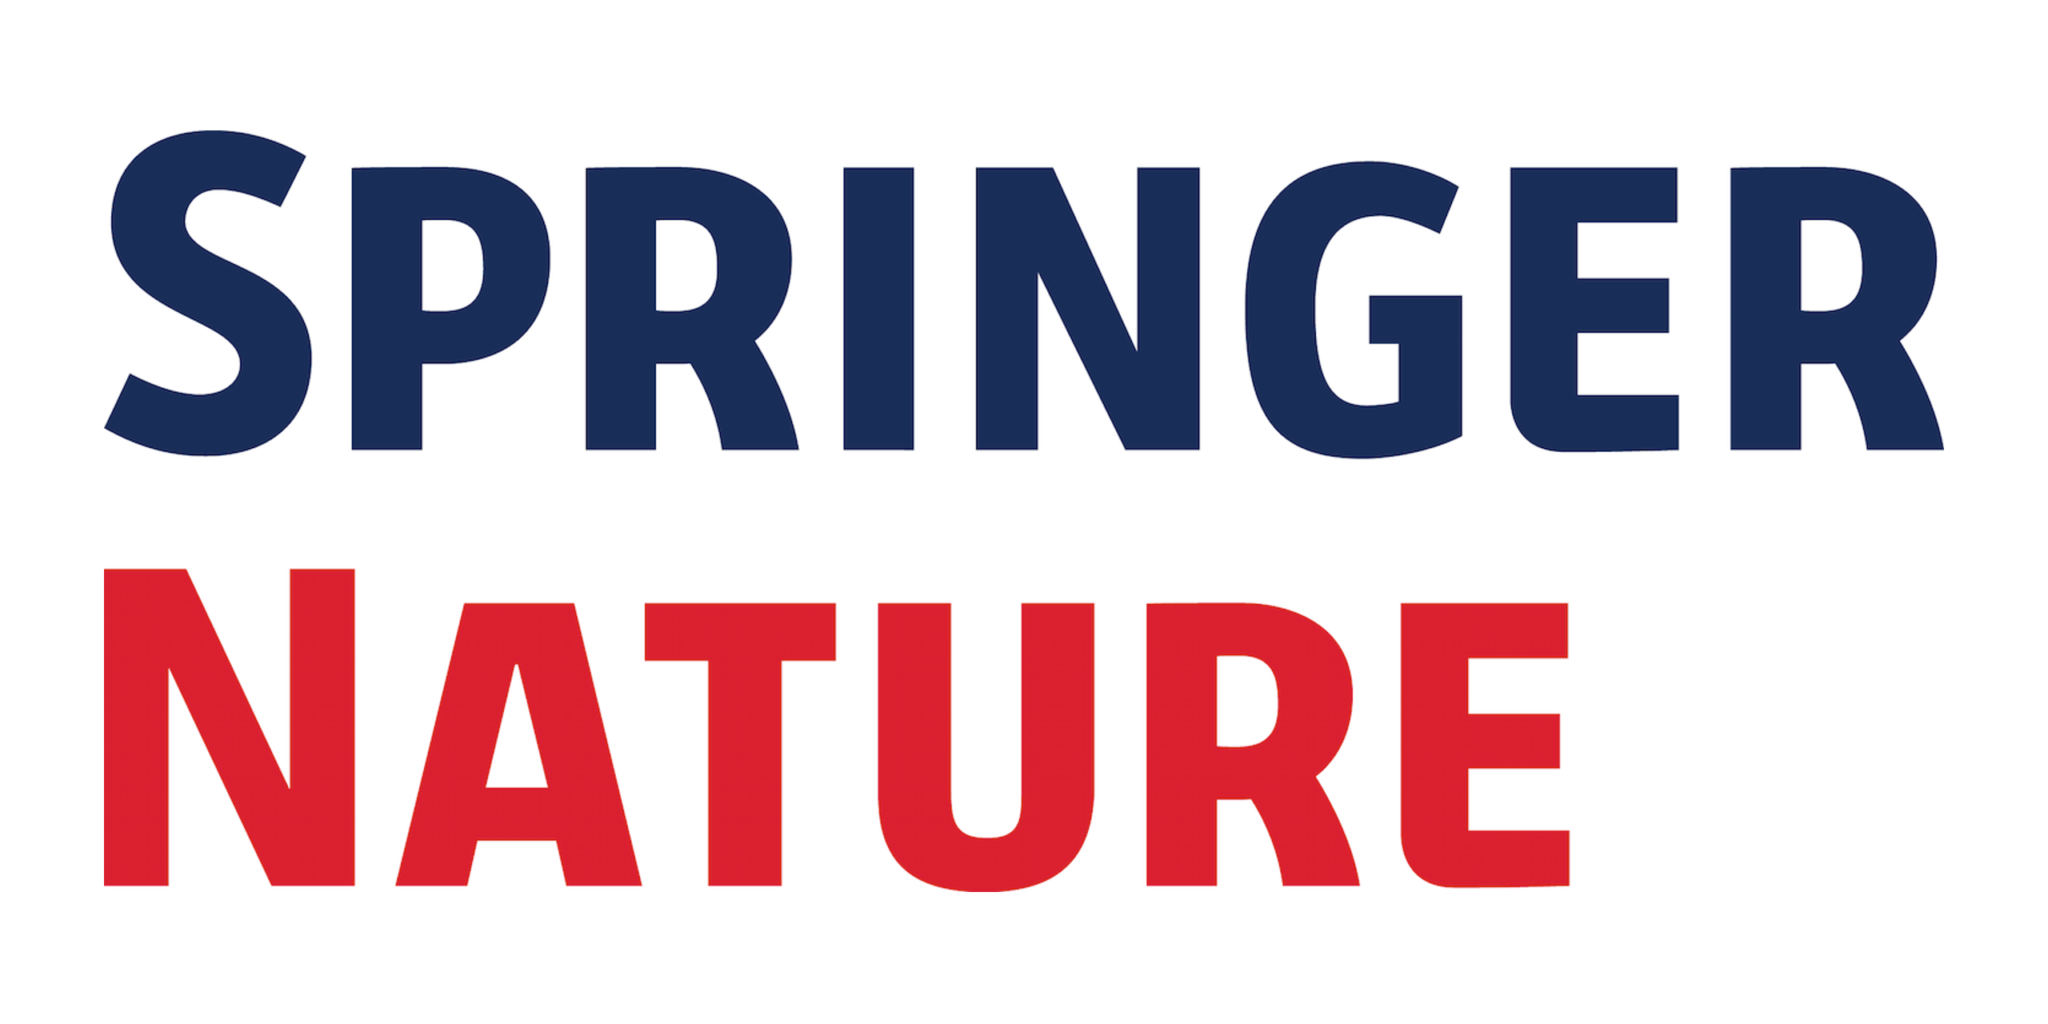 Https link springer com. Издательство Springer. Springer лого. Springer nature. Springer nature logo.